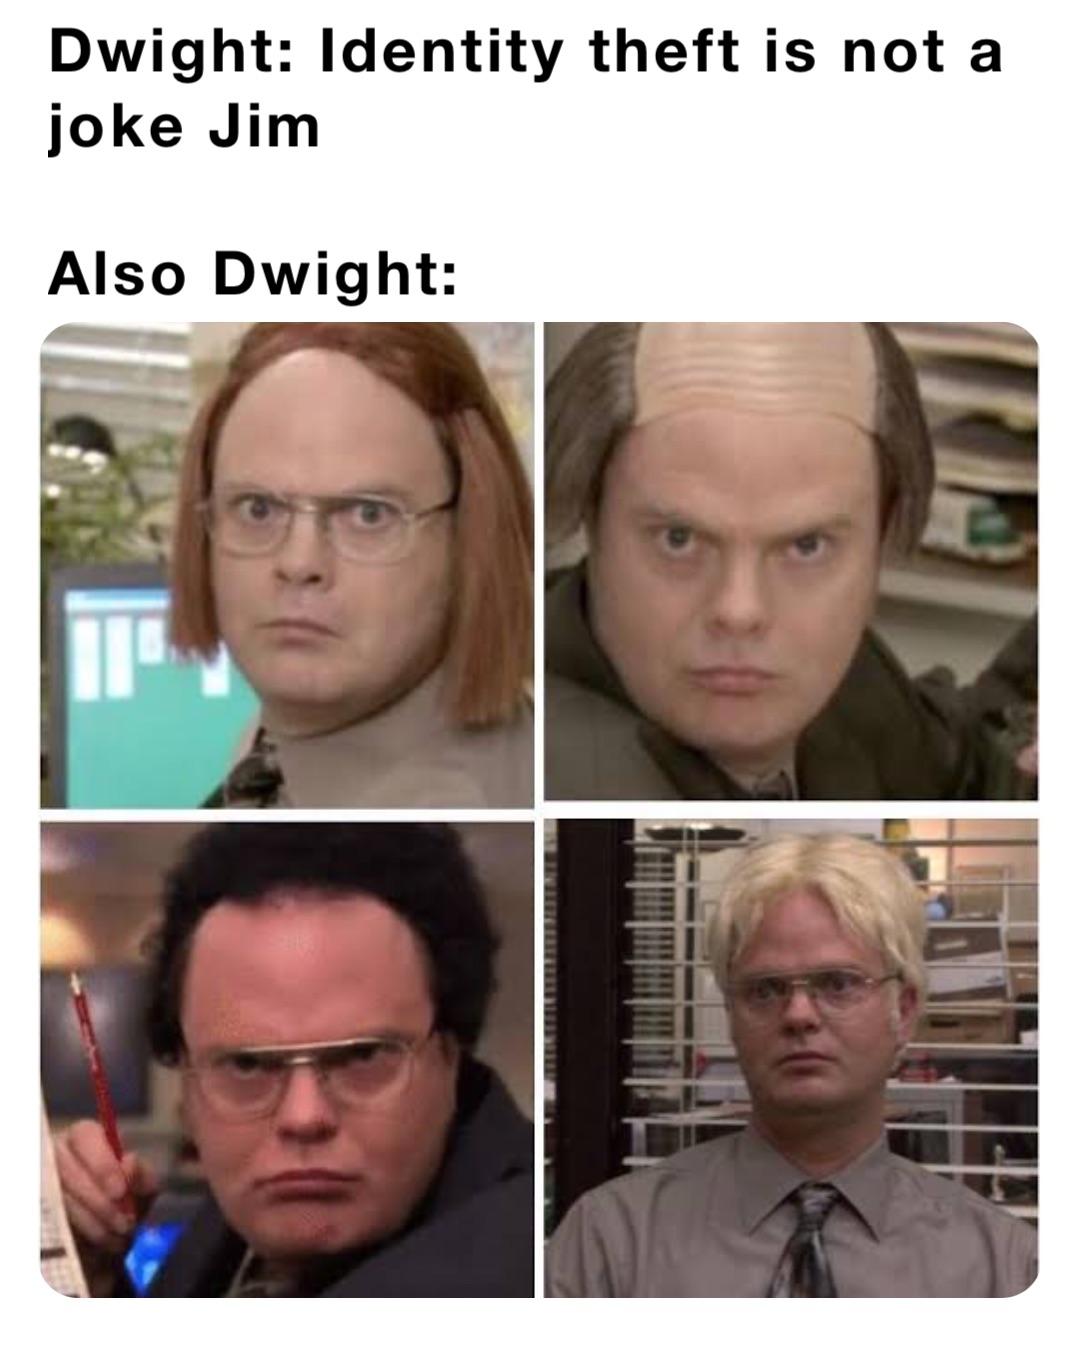 Dwight: Identity theft is not a joke Jim

Also Dwight: